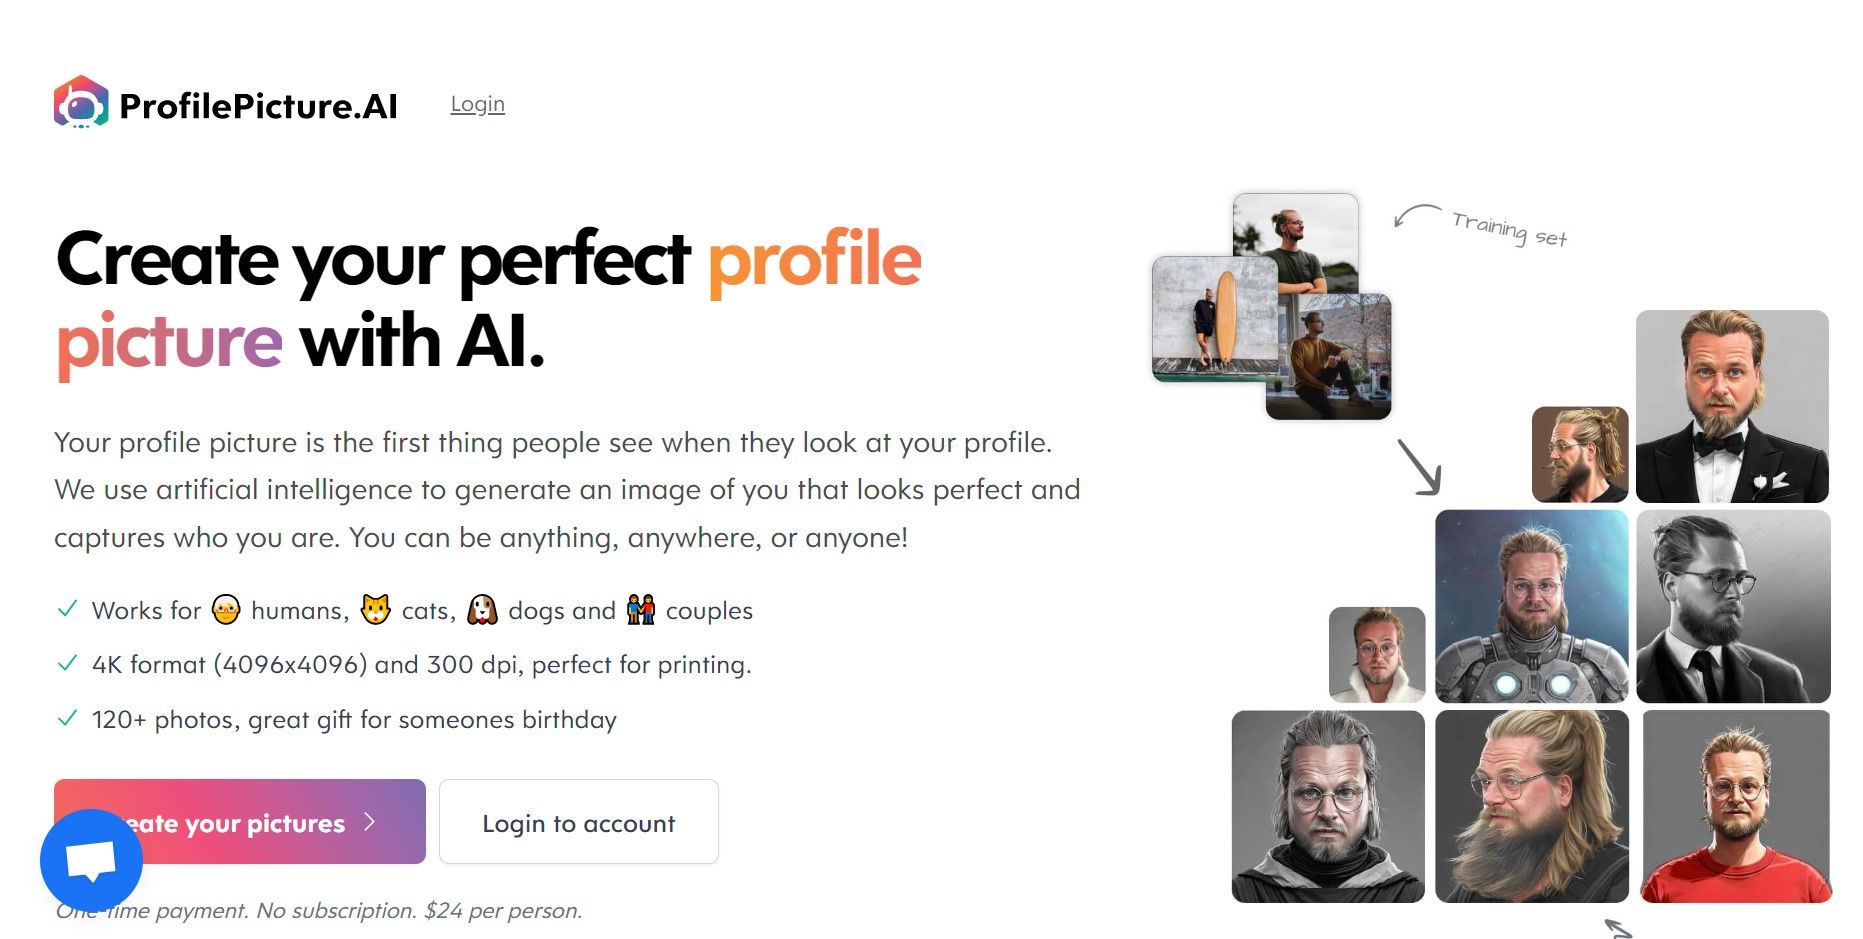 Post: Profile Picture AI